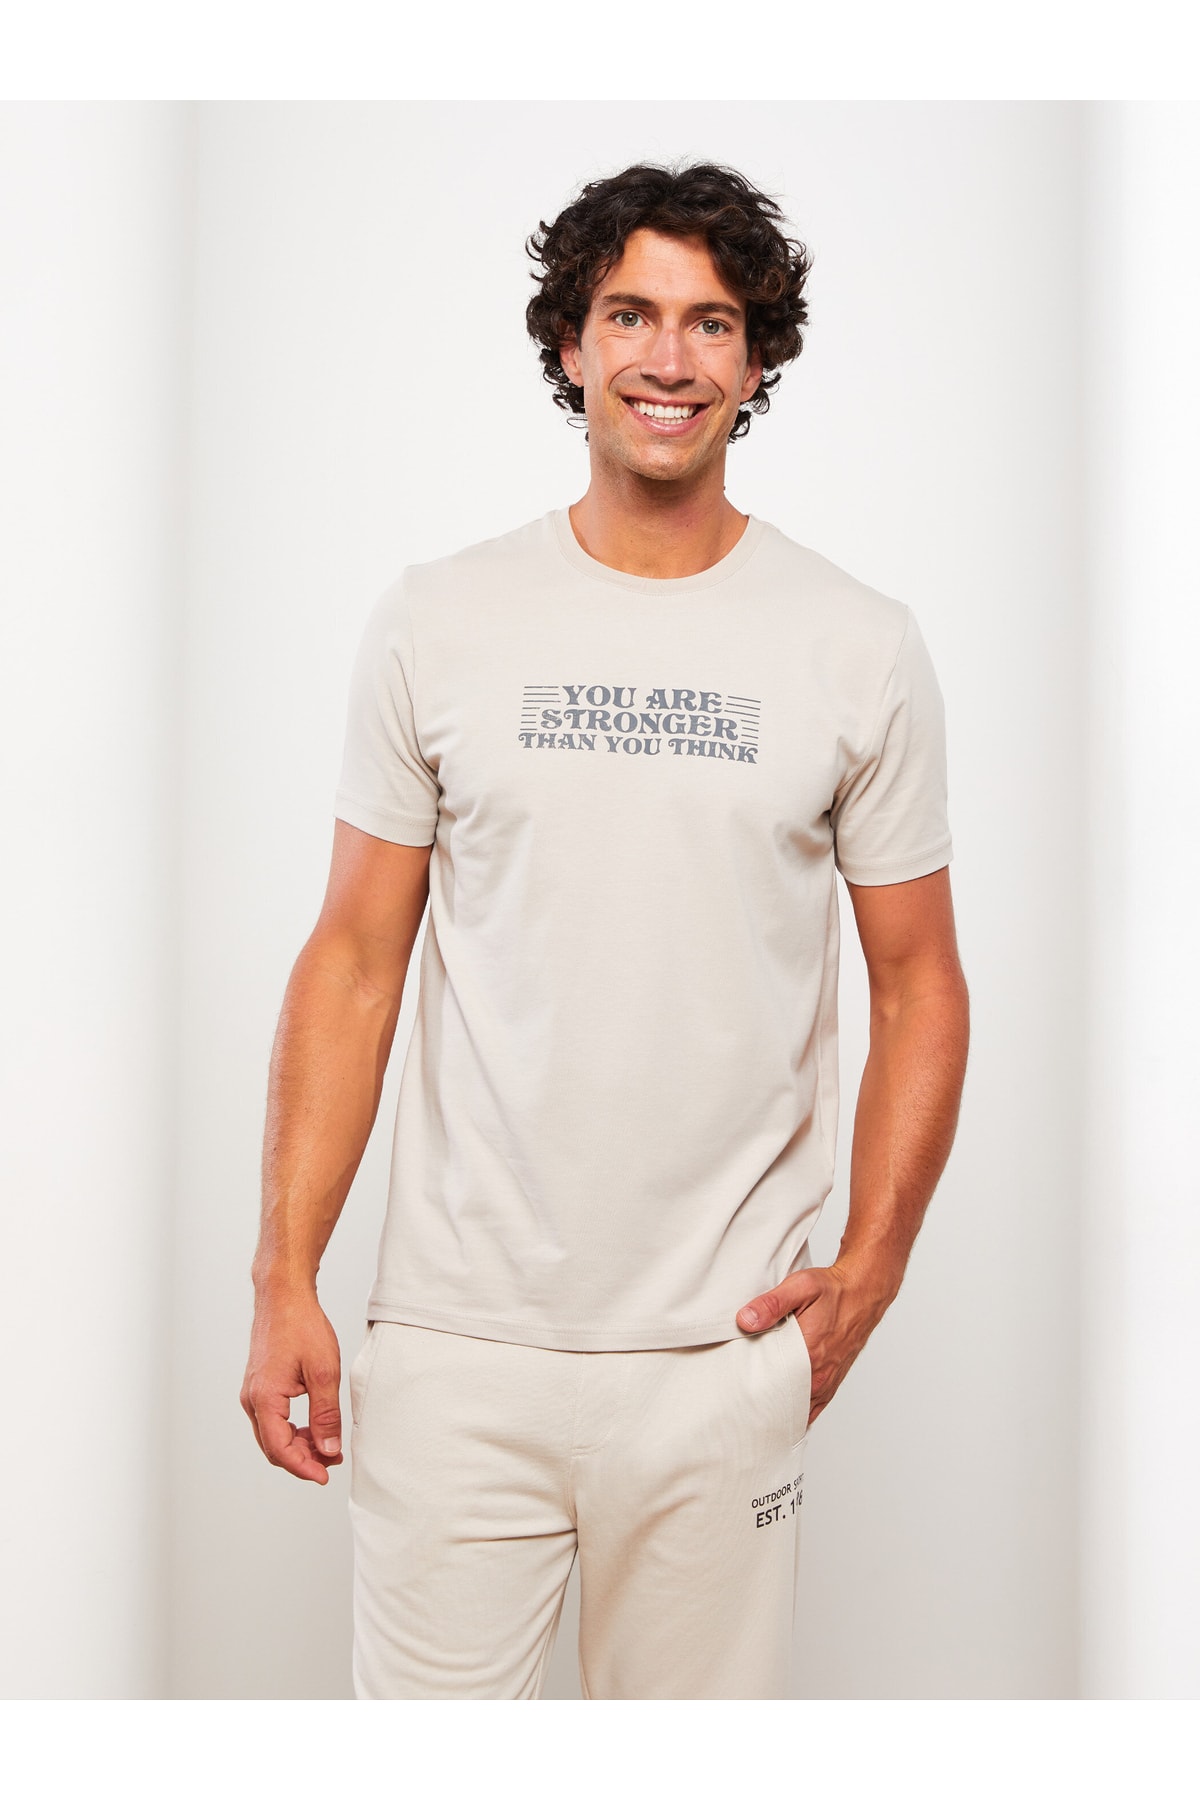 LC Waikiki Crew Neck Printed Short Sleeved Men's T-Shirt